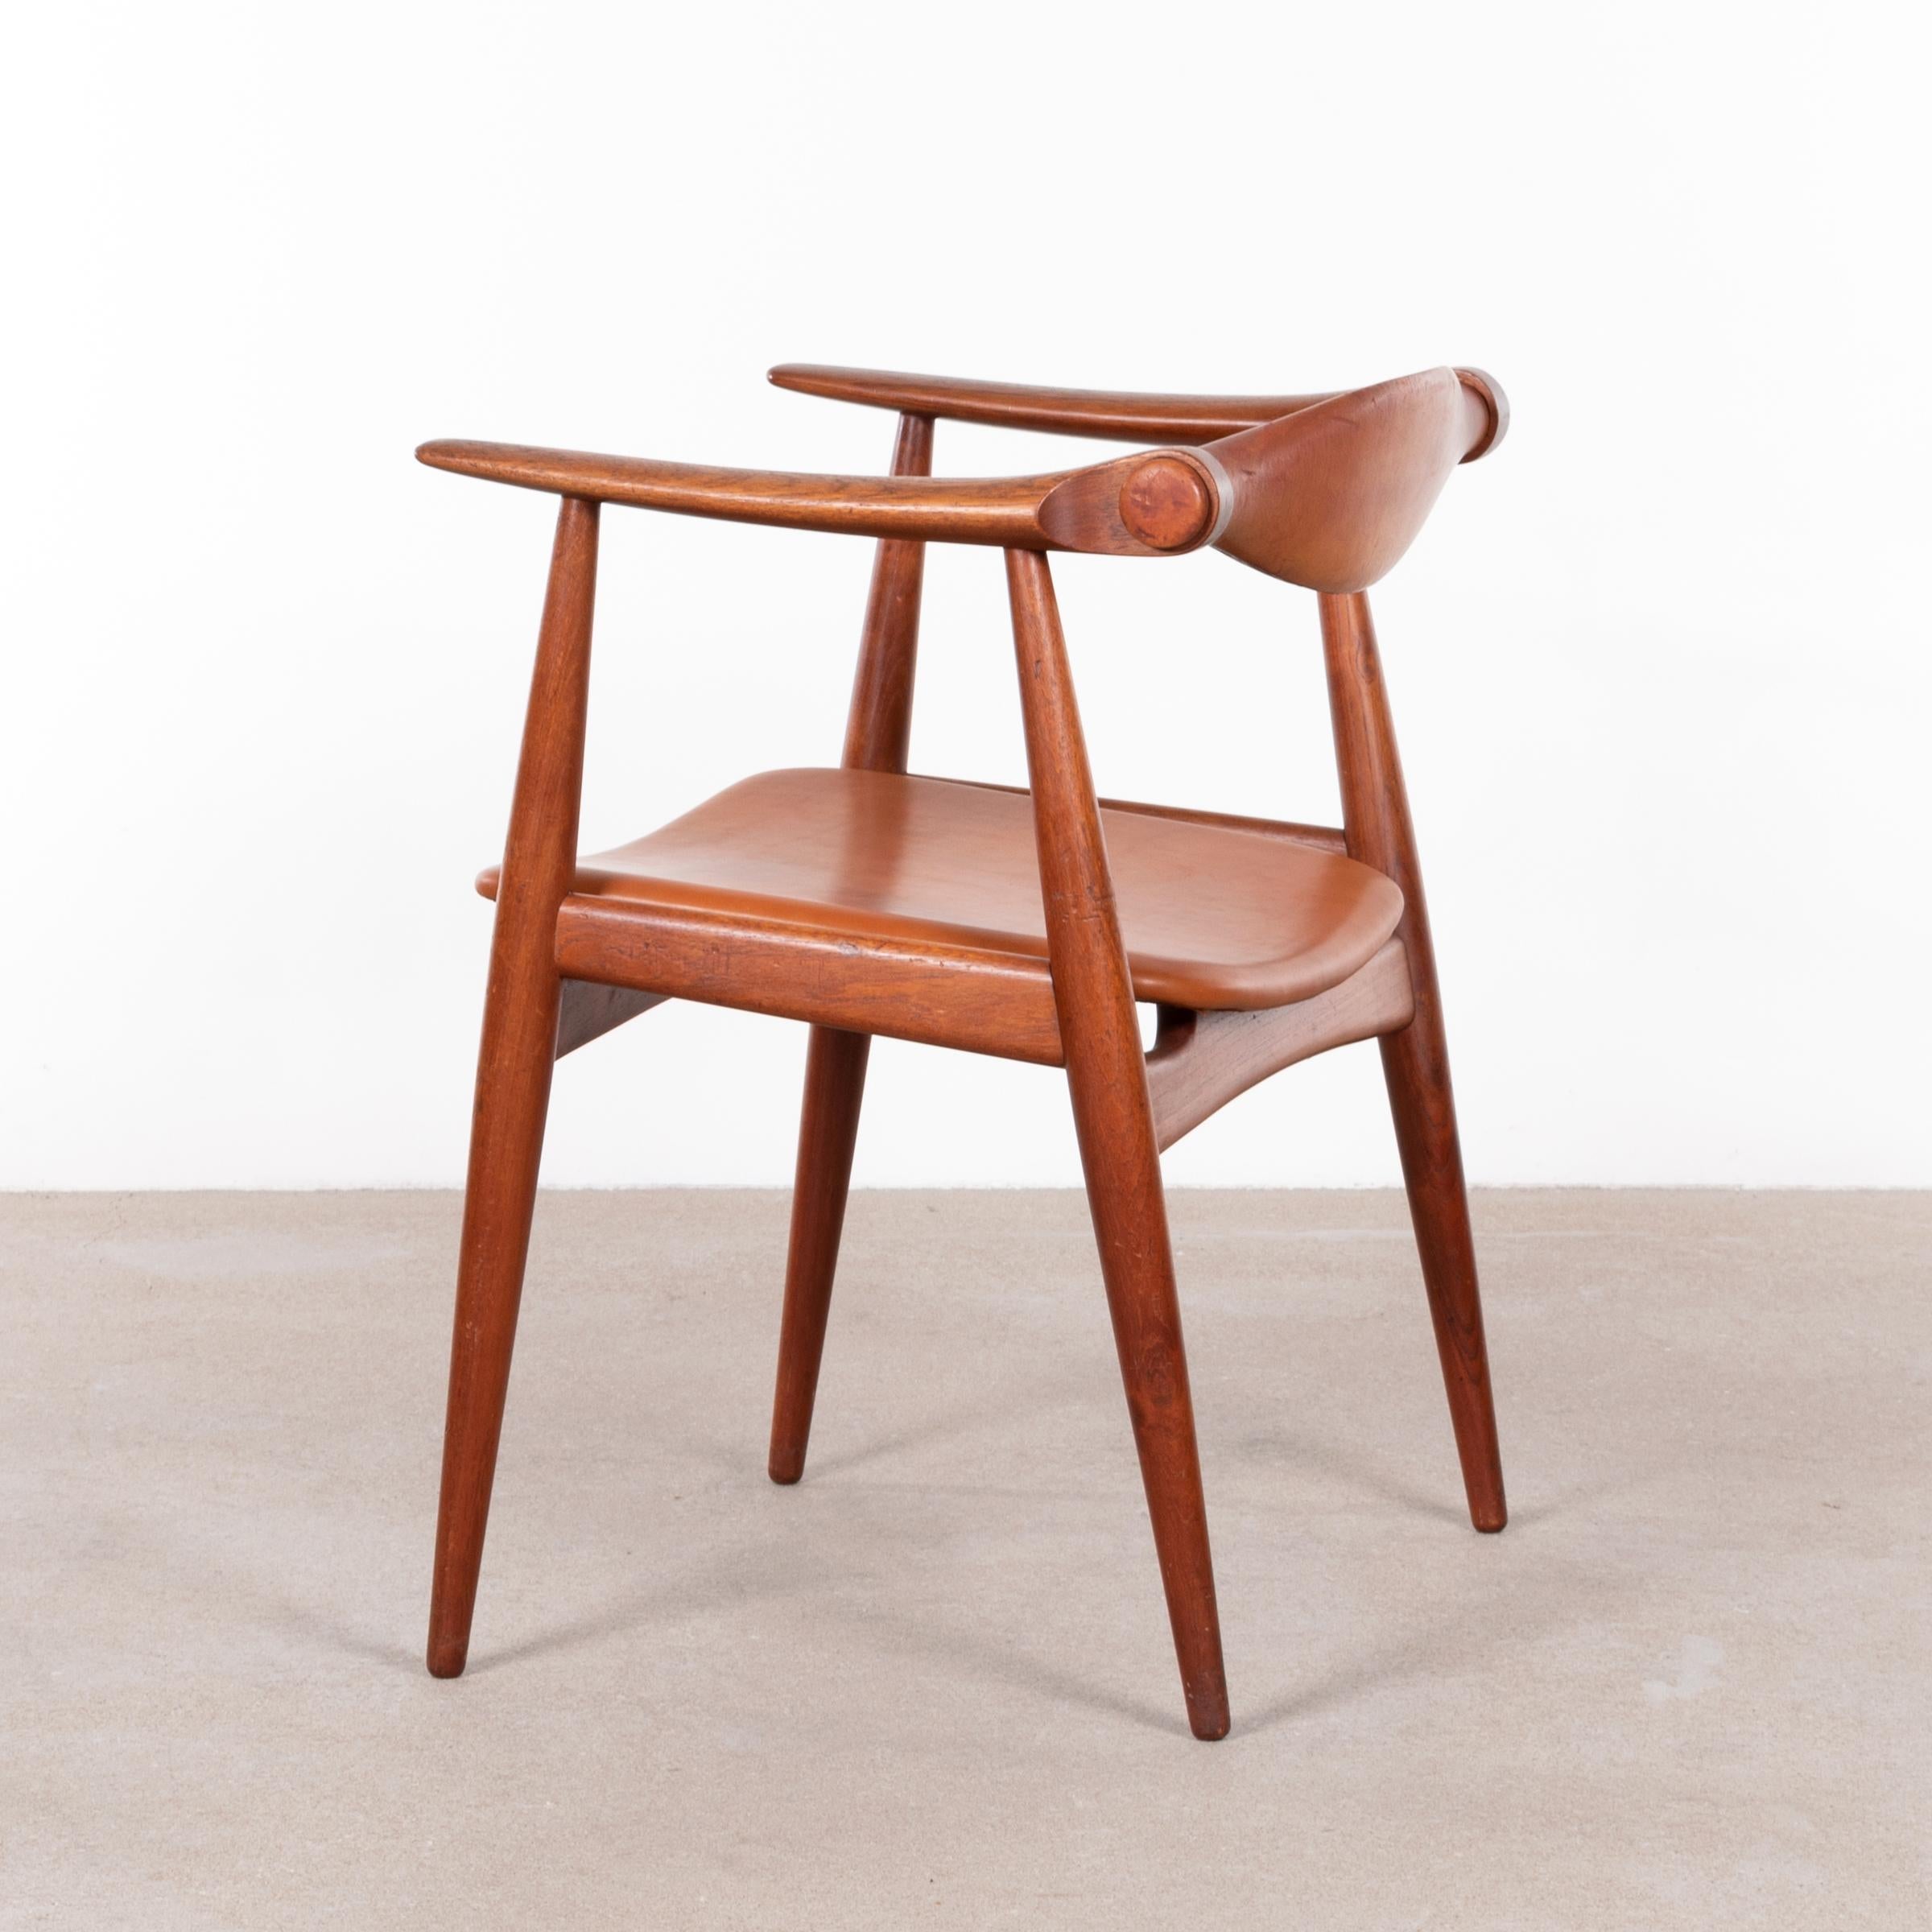 Danish Hans Wegner CH34 Chair in Teak and Cognac Leather for Carl Hansen & Søn, Denmark